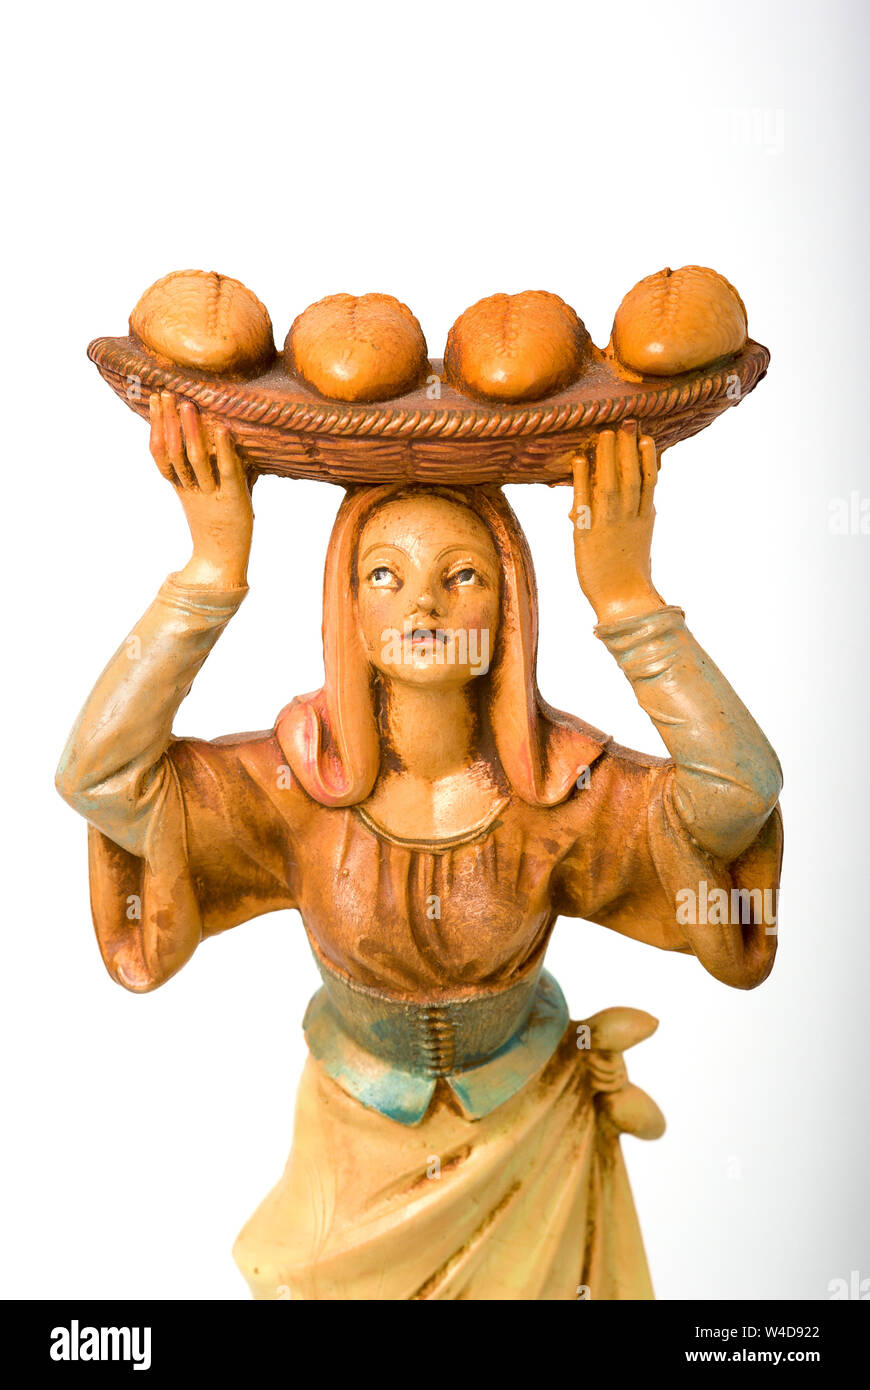 Presepe di Natale la figura che illustra la vita in tempi antichi a Napoli Italia UE e mostrando una giovane donna consegna pane fresco su un vassoio di canna bal Foto Stock